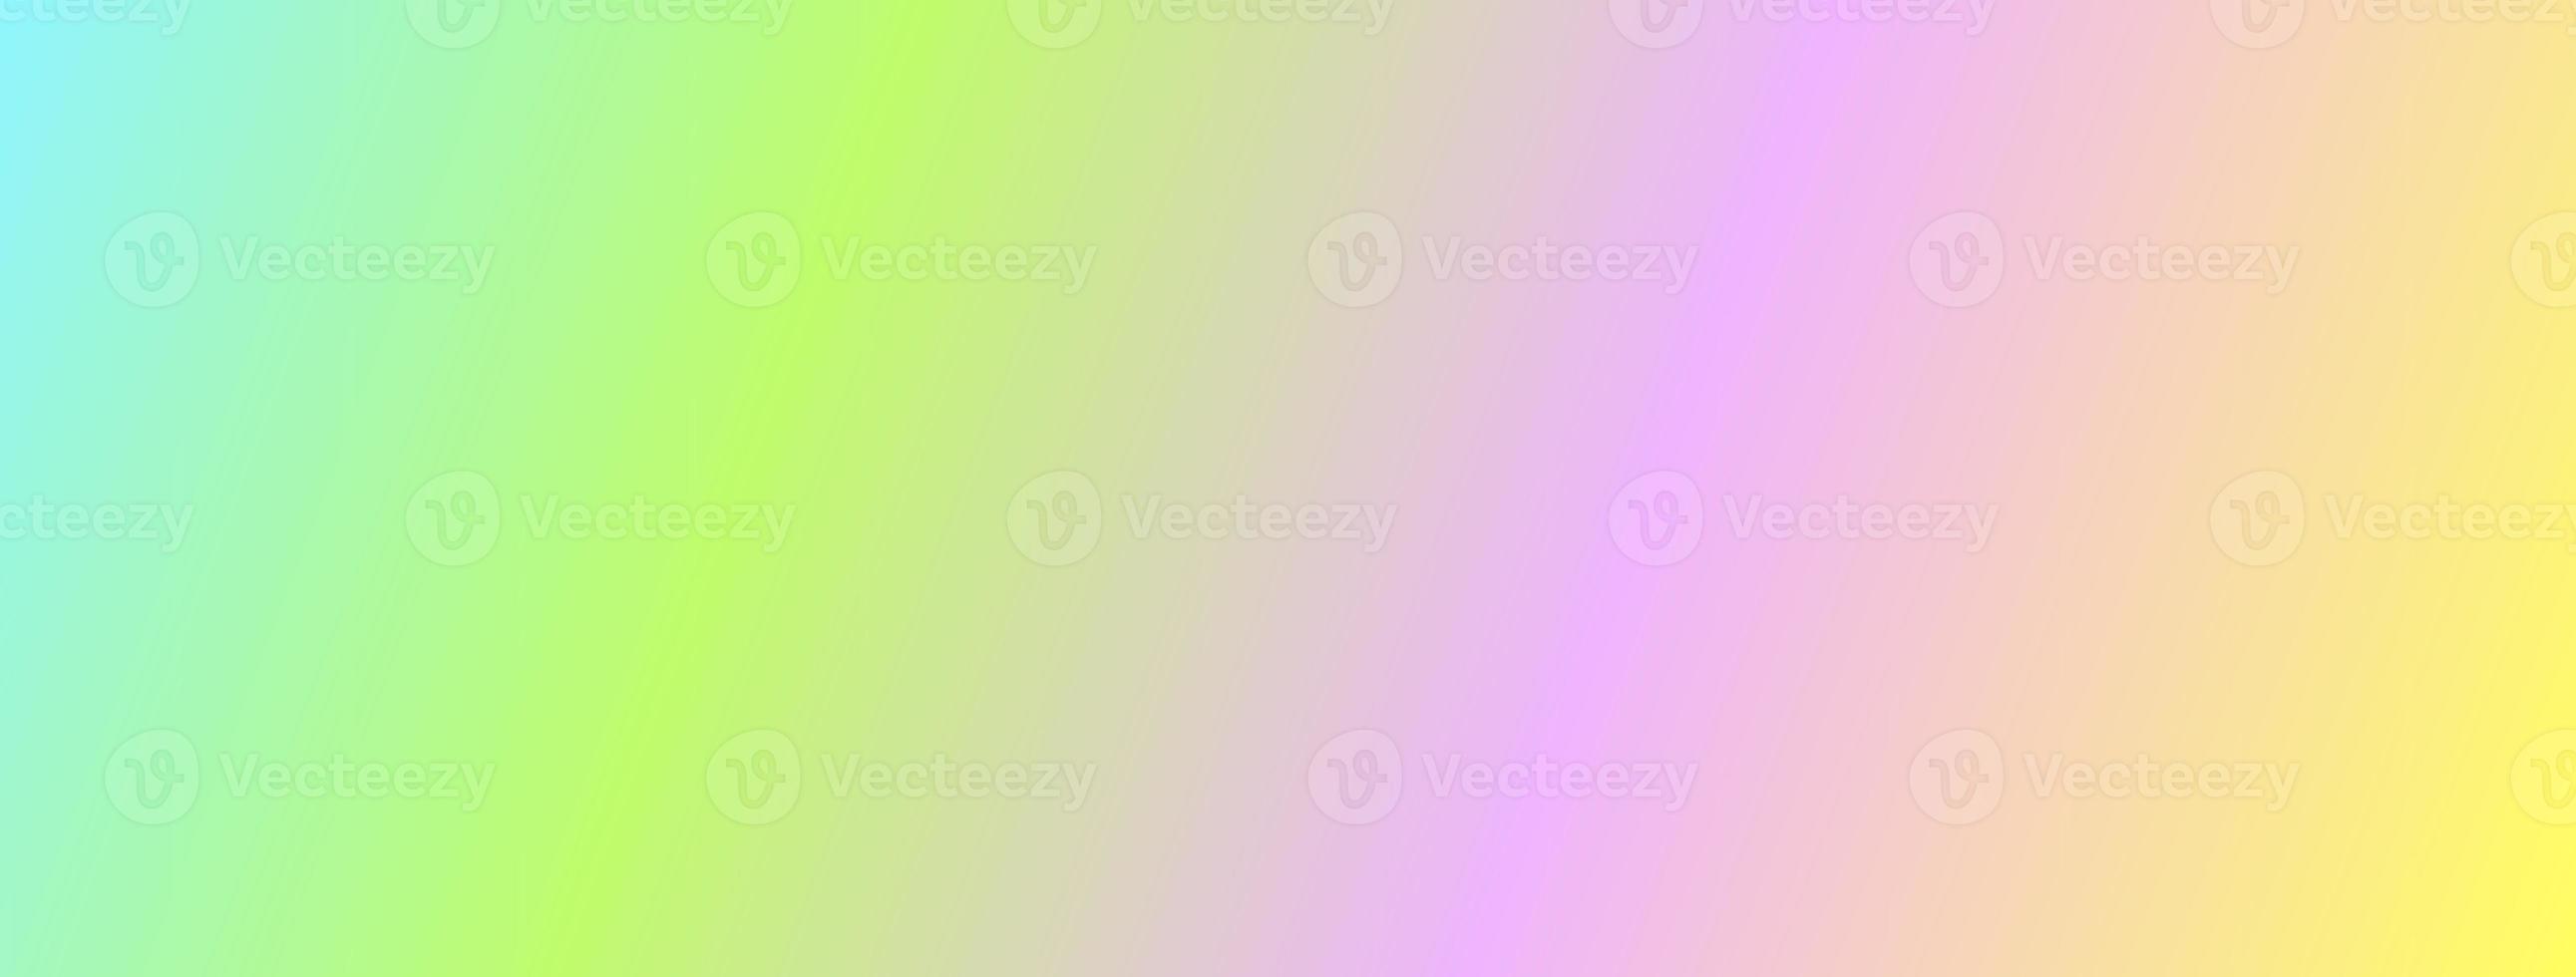 lutning pastellfärgad bakgrund för banner. modern horisontell design för mobila applikationer. pastell regnbåge. ultraviolett metalliskt papper. mall för presentation. omslag till webbdesign. proffsfoto foto